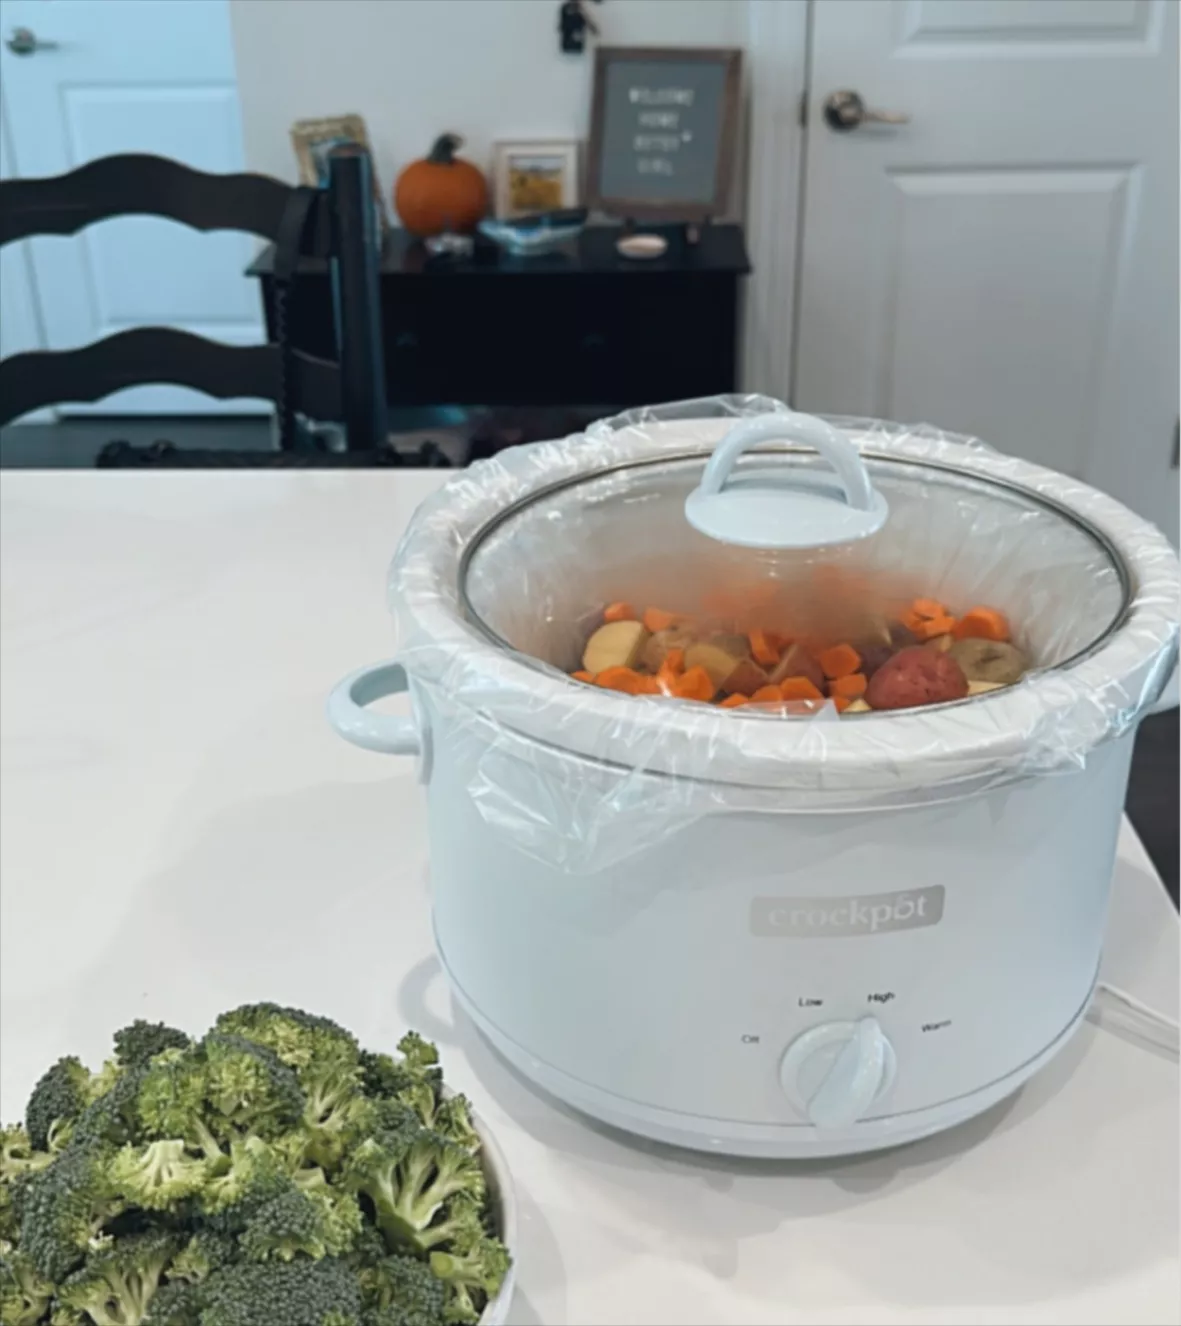 Crock-pot 4.5 Qt. Manual Slow Cooker